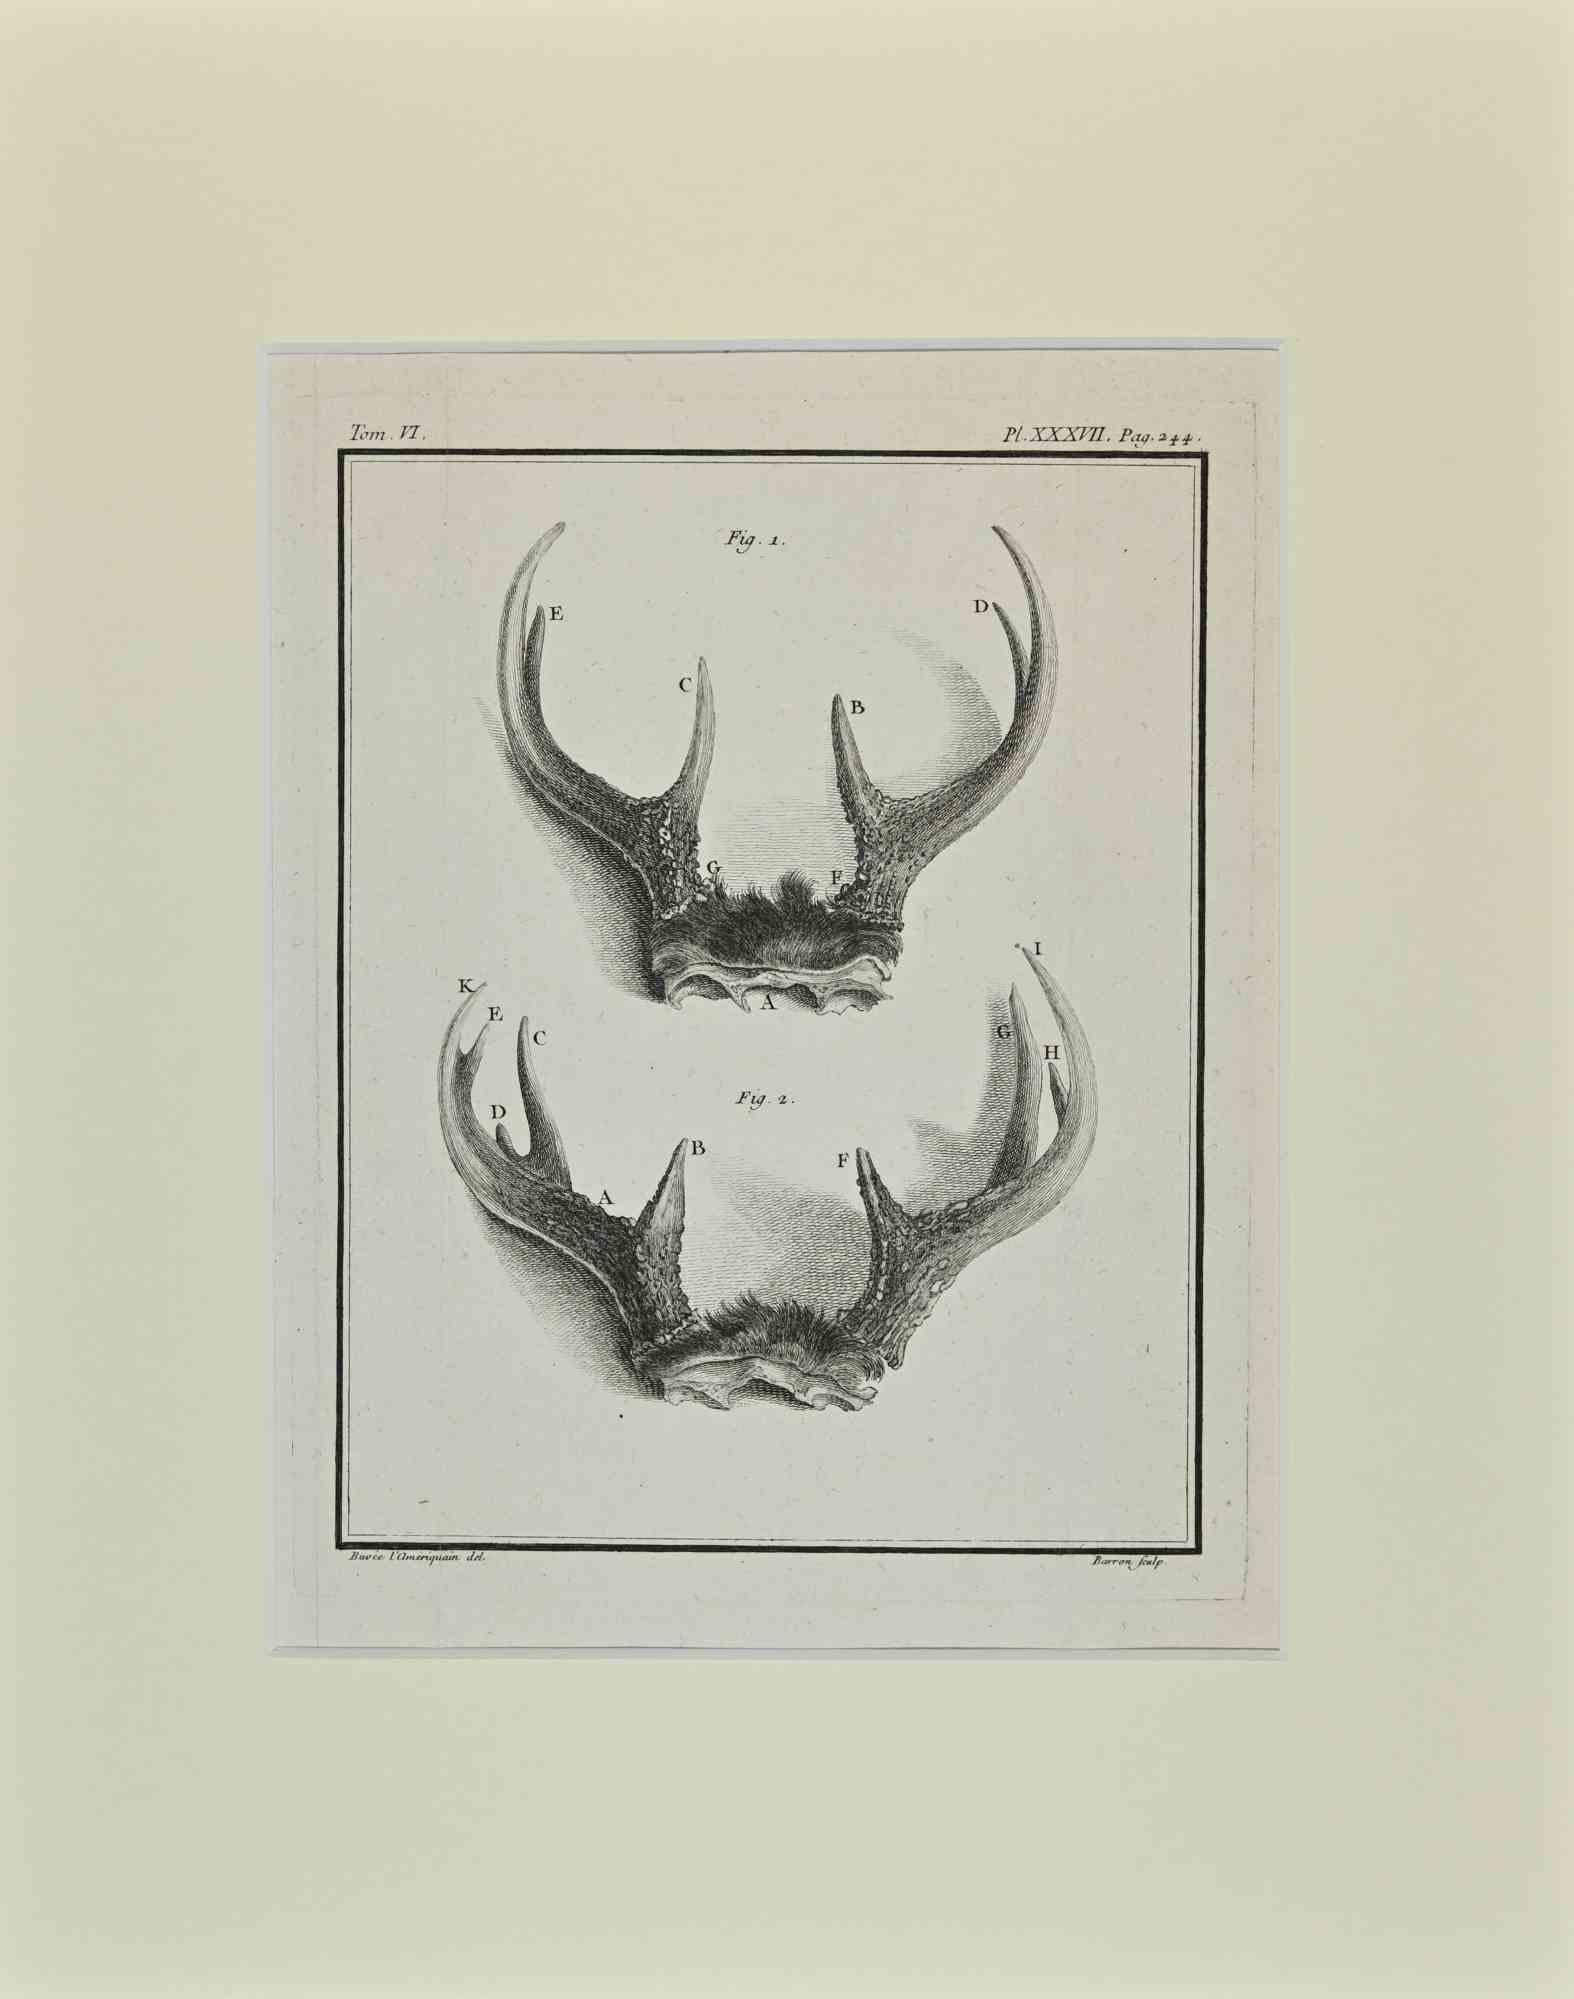 Hirschhörner ist ein Kunstwerk von Buvée l'Américain aus dem Jahr 1771.  

Radierung B./W. Druck auf Elfenbeinpapier. Signiert auf der Platte am unteren linken Rand.

Das Werk ist auf Karton geklebt. Abmessungen insgesamt: 35x28 cm.

Das Kunstwerk